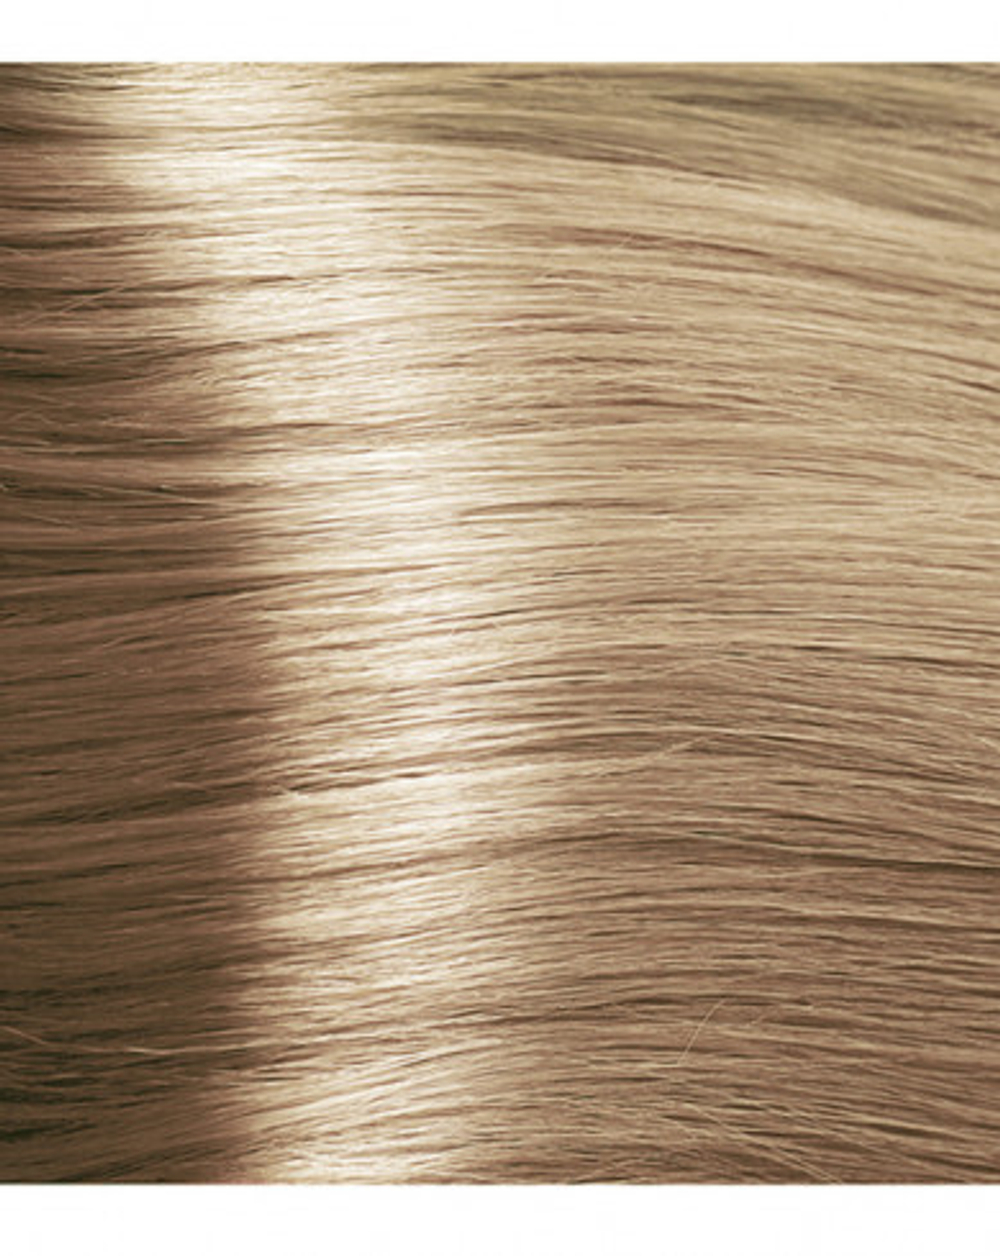 Kapous Professional Крем-краска для волос, с экстрактом жемчуга, Blond Bar, 036, Медовая роса, 100 мл*